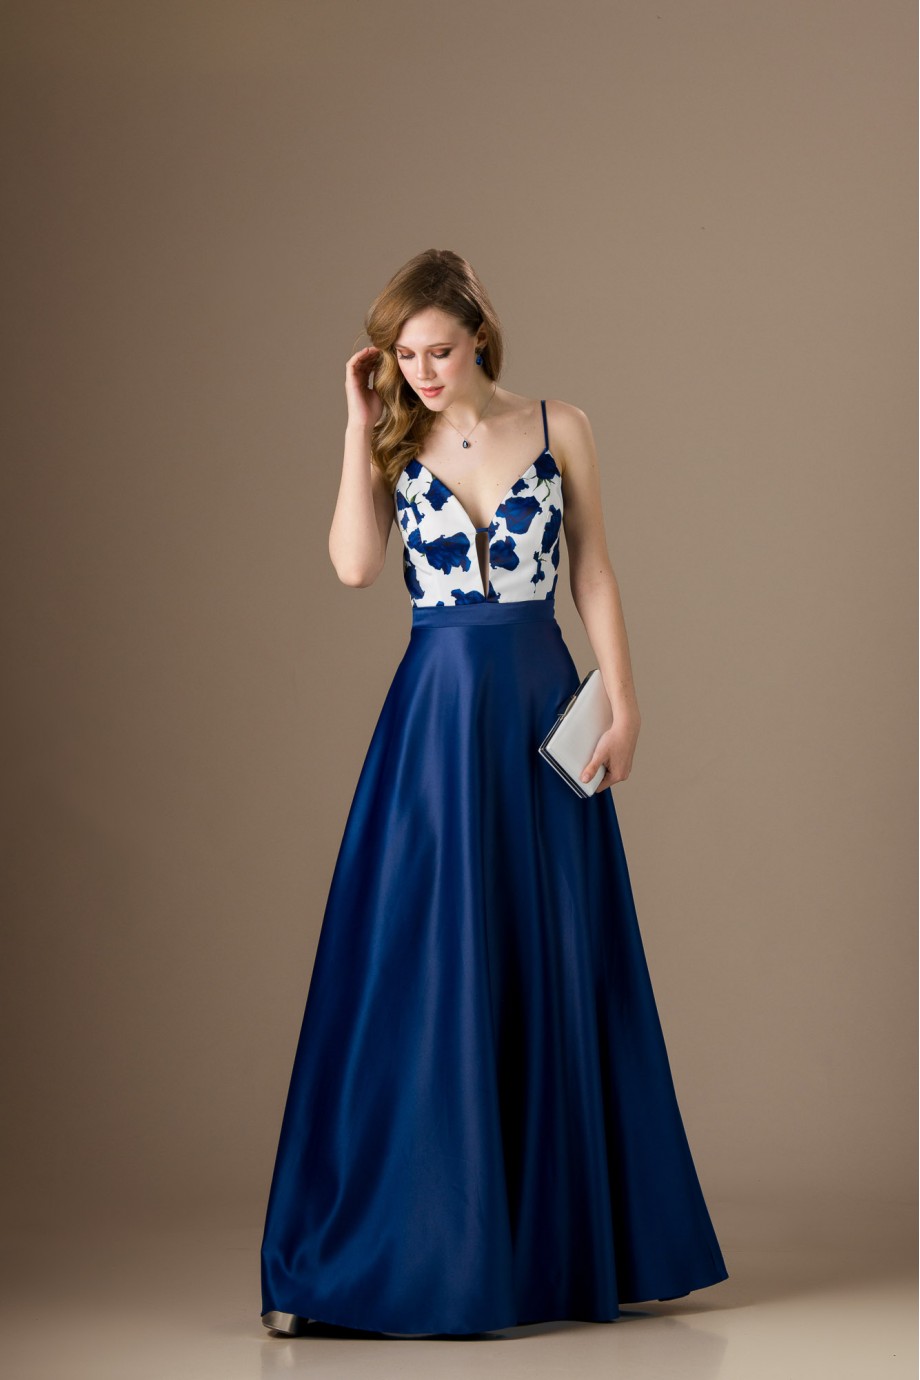 Μακρύ σατέν εξώπλατο μπλε ηλεκτρίκ φόρεμα